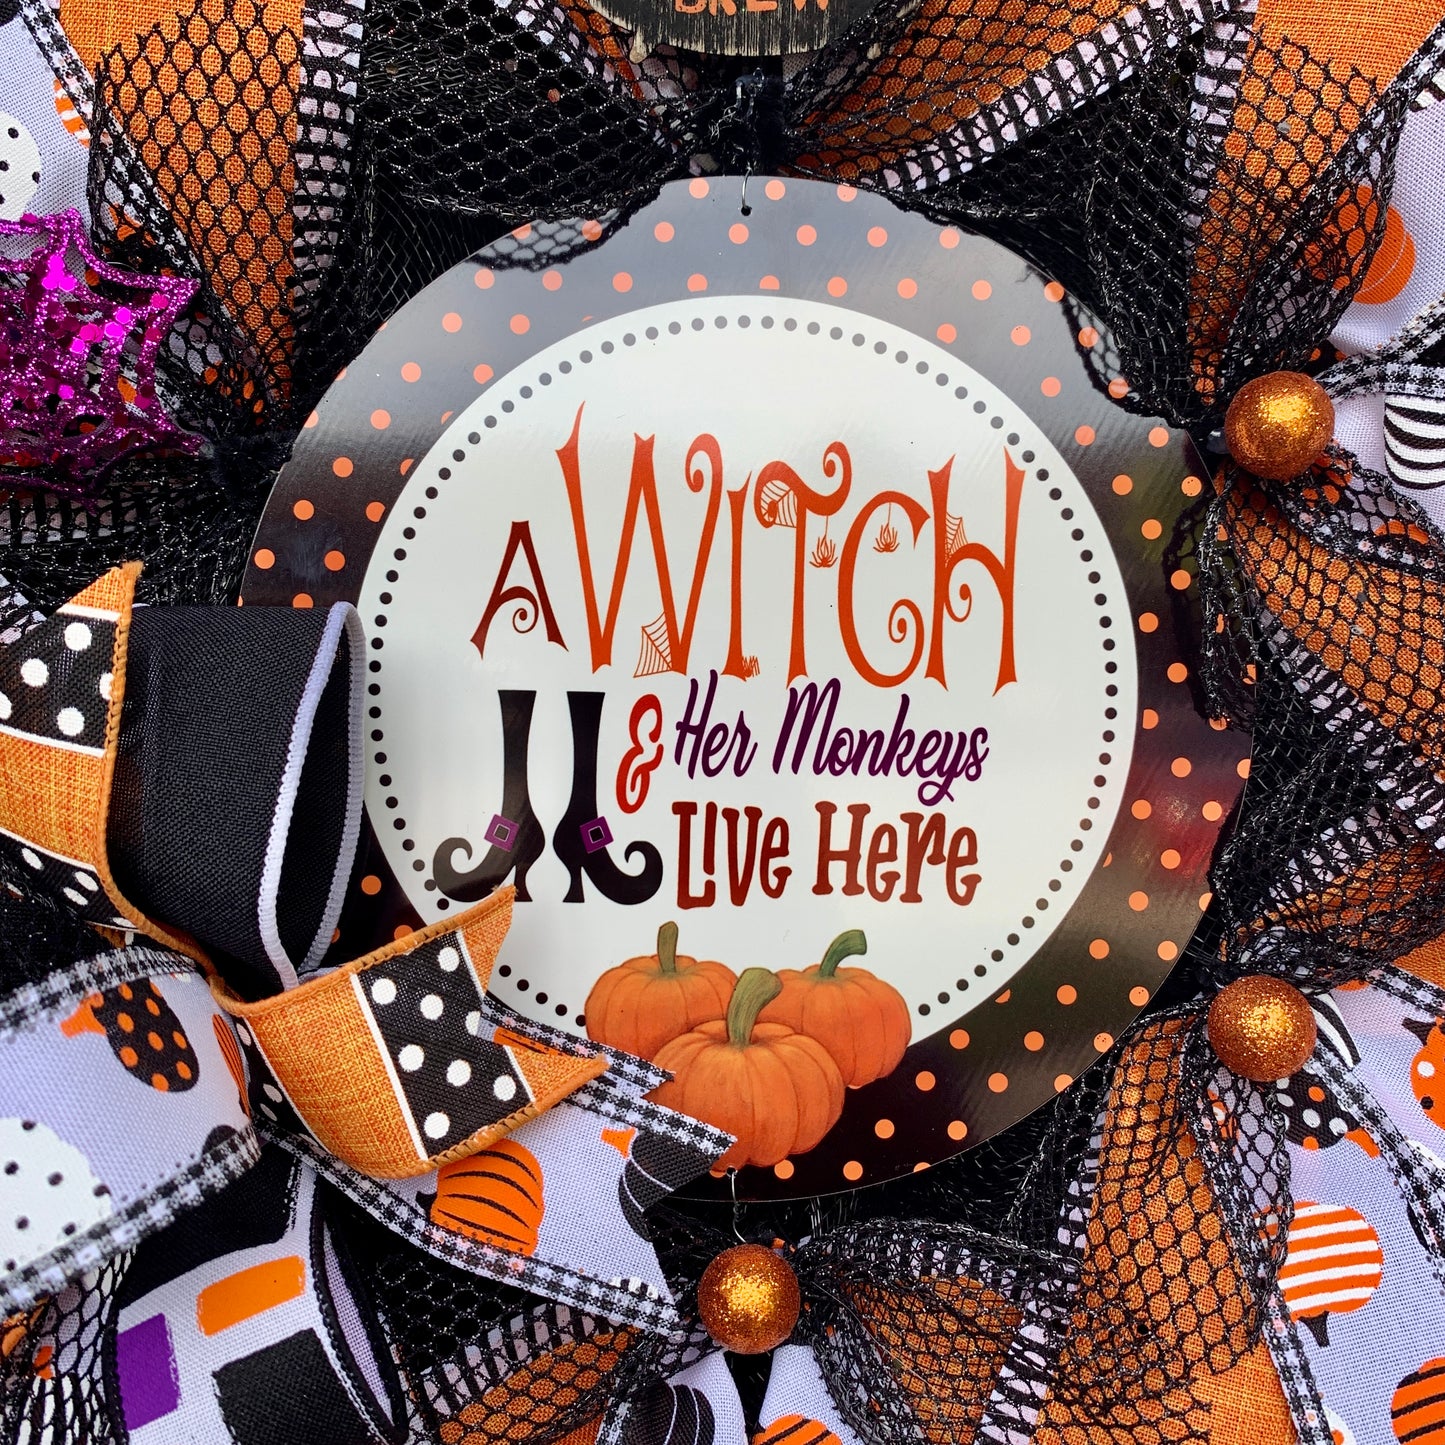 Halloween Witch Wreath, Halloween Witch Wreath, Witch Door Hanger, Halloween Pancake Wreath